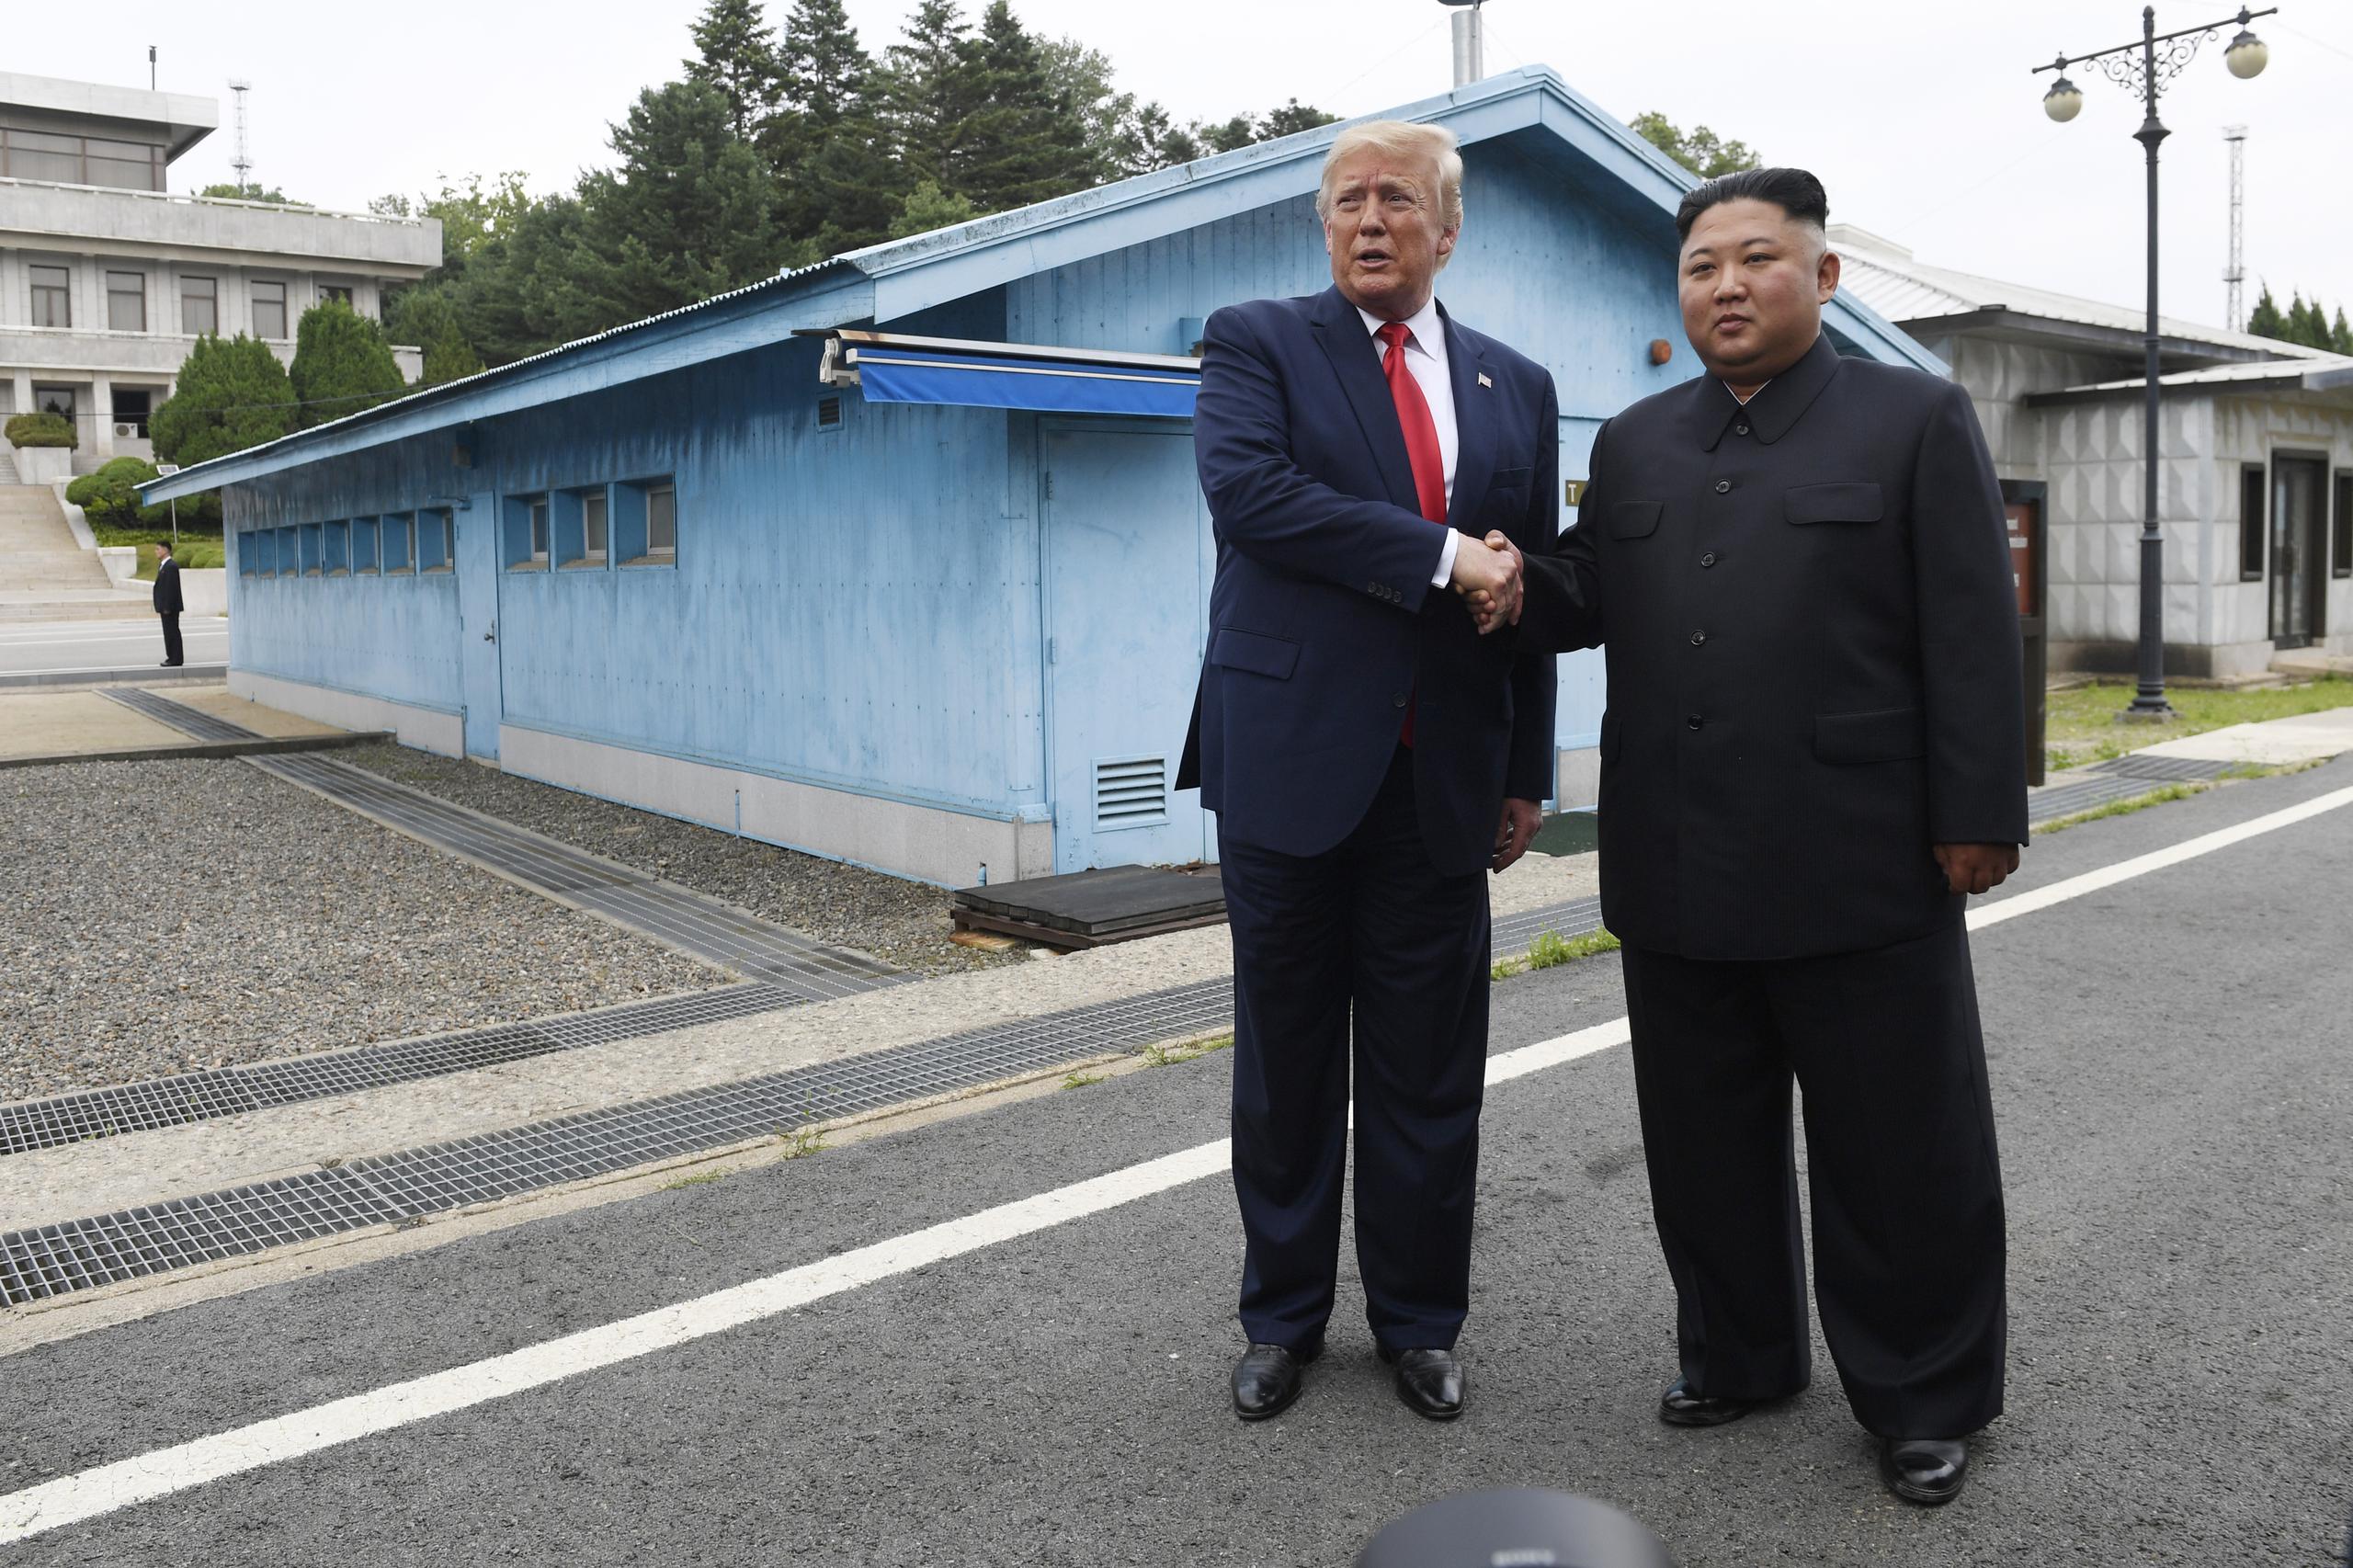 El presidente estadounidense Donald Trump con el líder norcoreano Kim Jong Un en Panmunjom, la aldea en la zona desmilitarizada entre las dos Coreas el 30 de junio de 2019